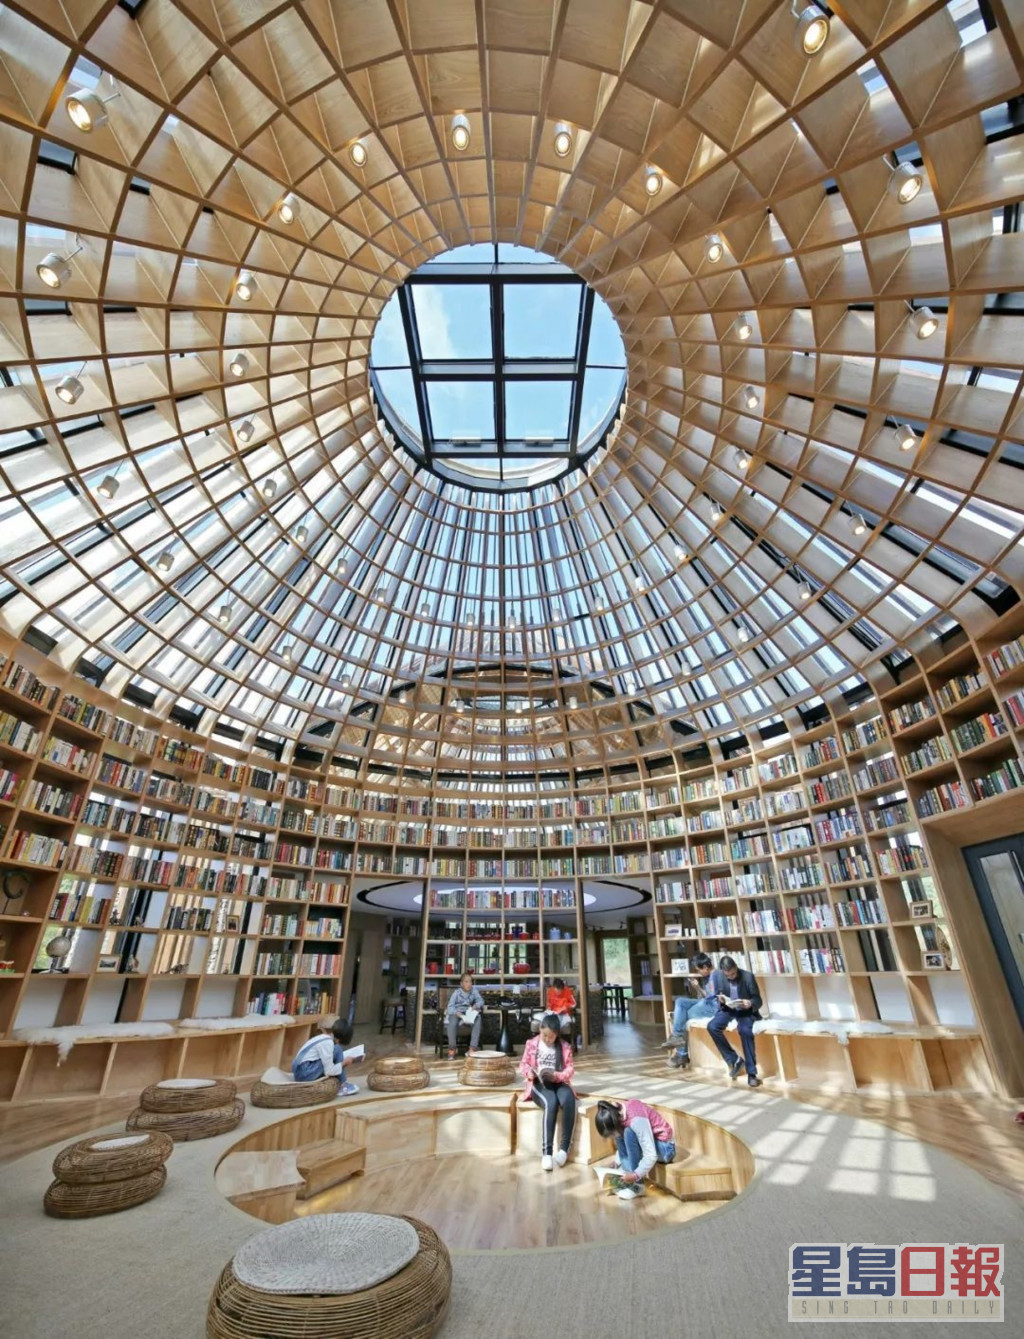 吴彦祖2017年拍内地节目《漂亮的房子》一手一脚自己建成的草原星空图书馆「木兰坊」，入围有「建筑界奥斯卡」之称的英国皇家建筑师学会奖。